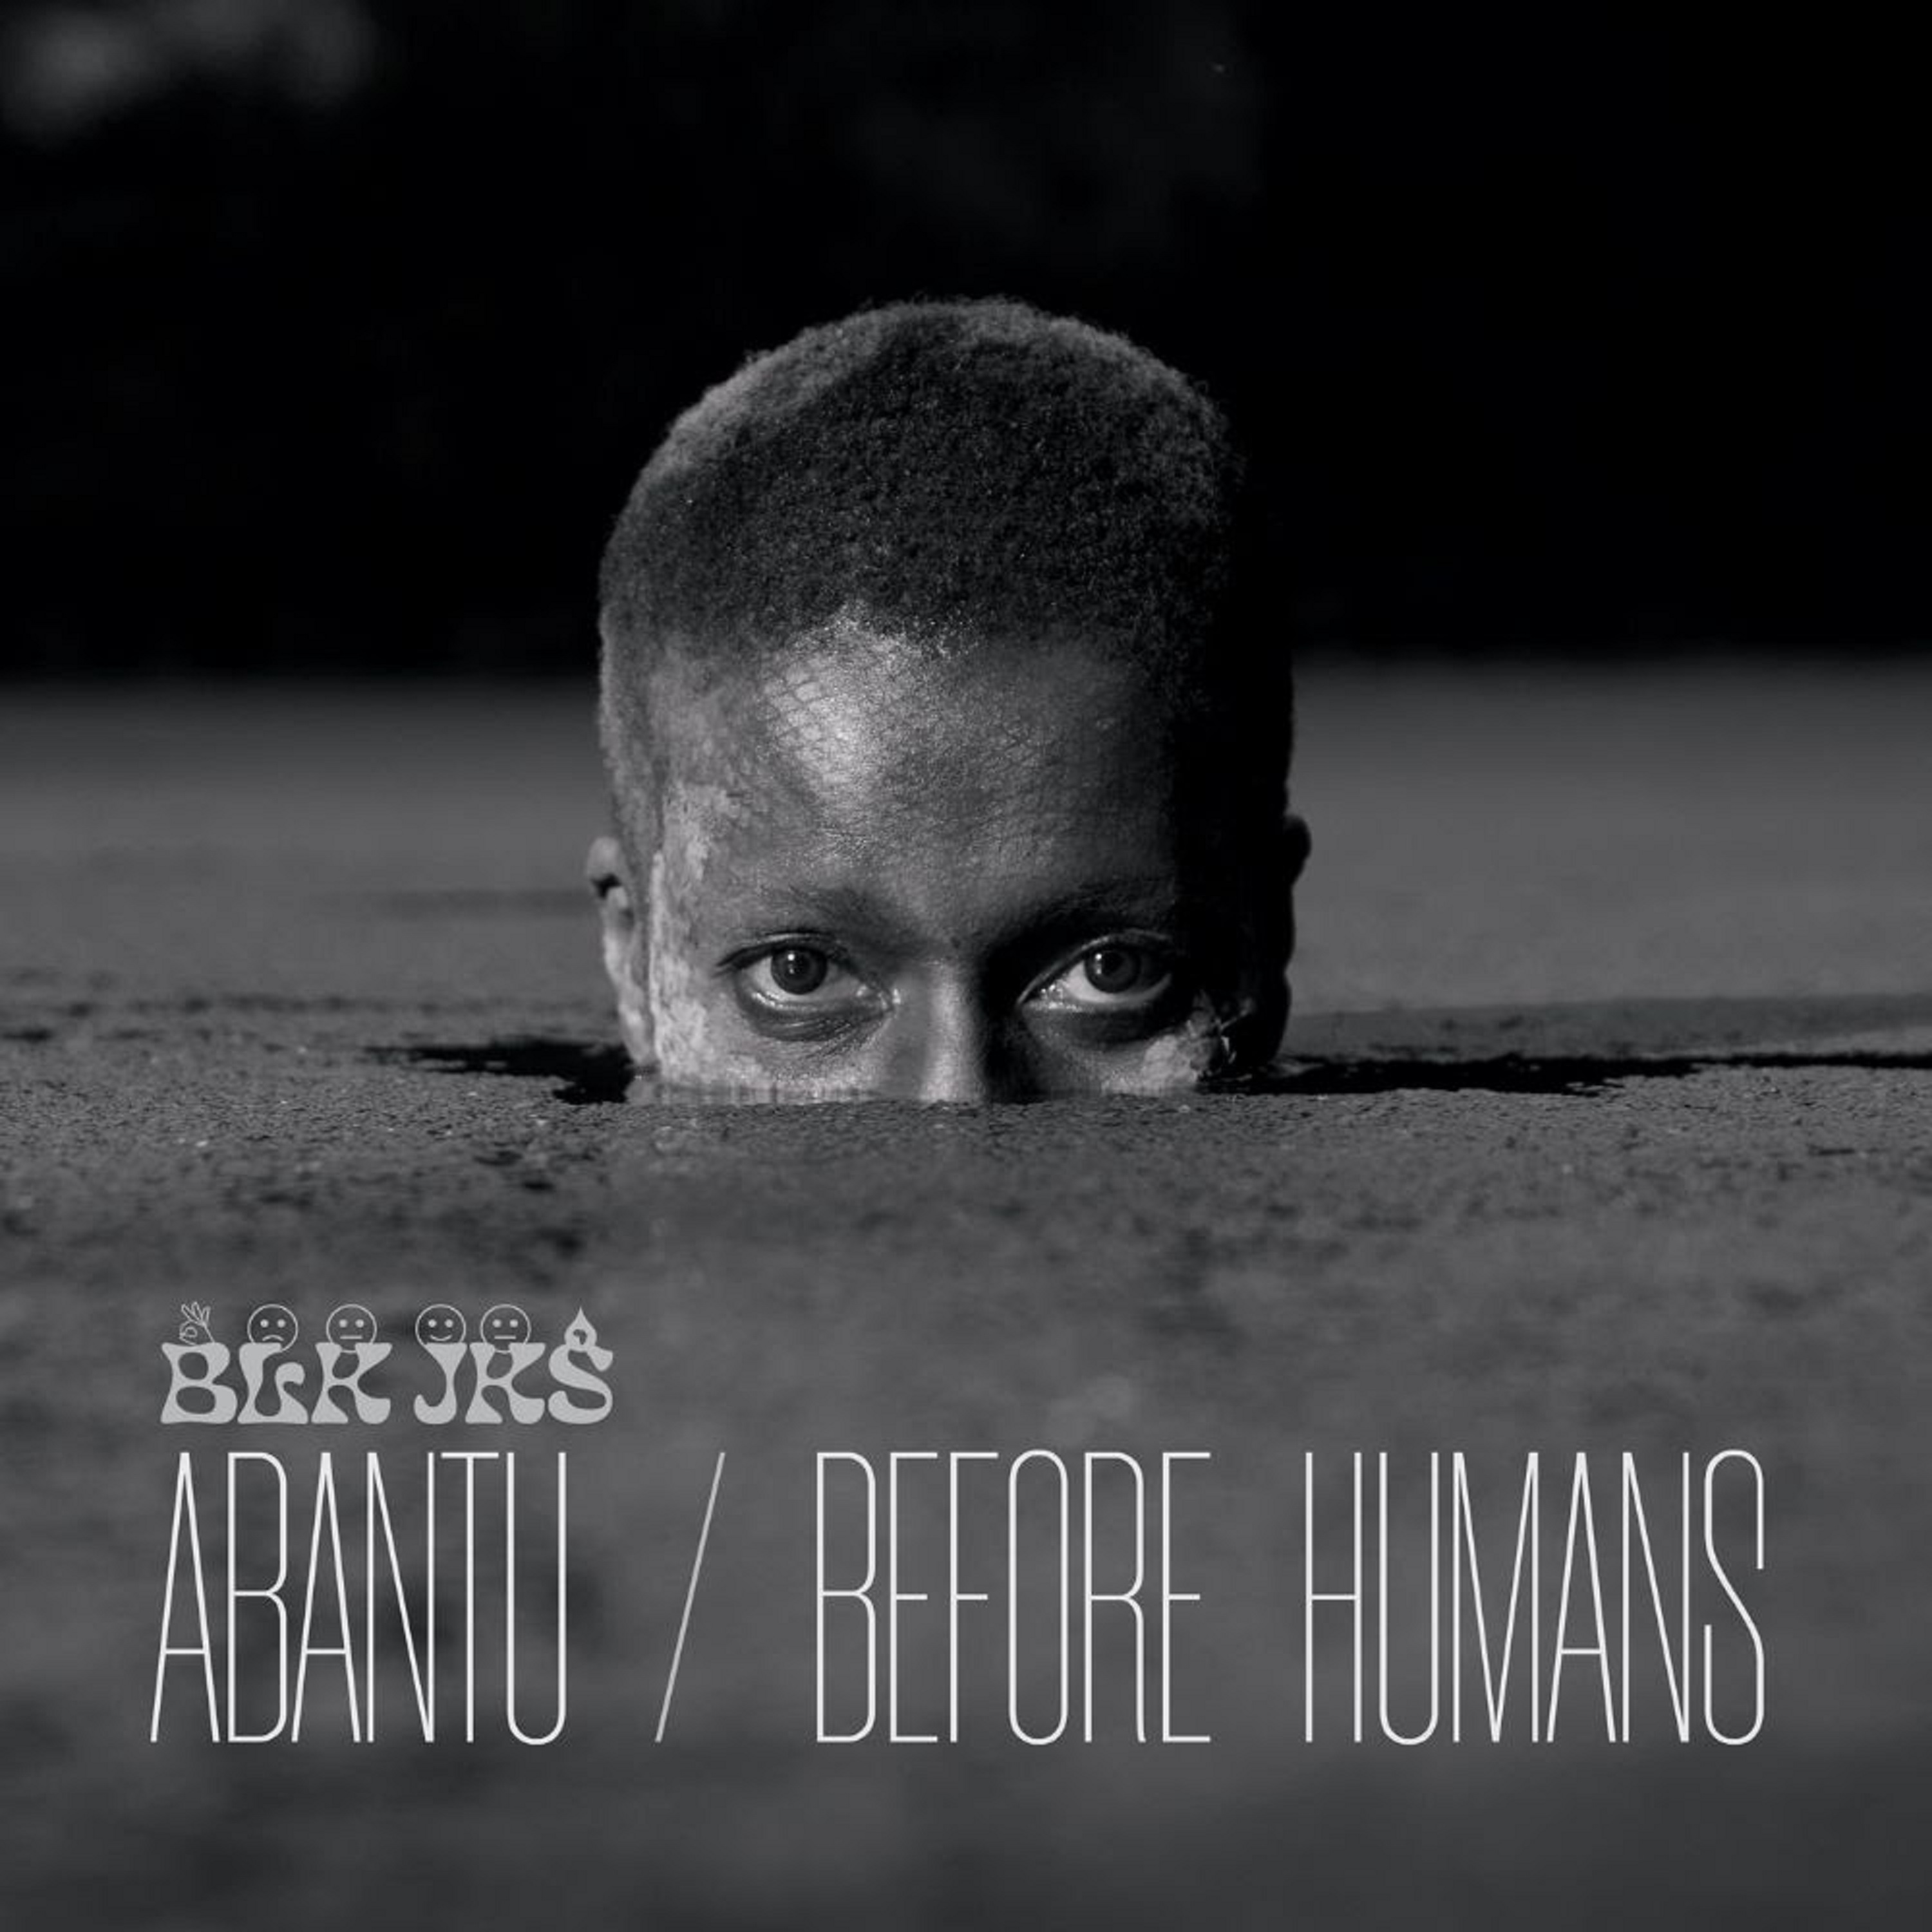 BLK JKS 'Abantu / Before Humans' LP out 05/21/21